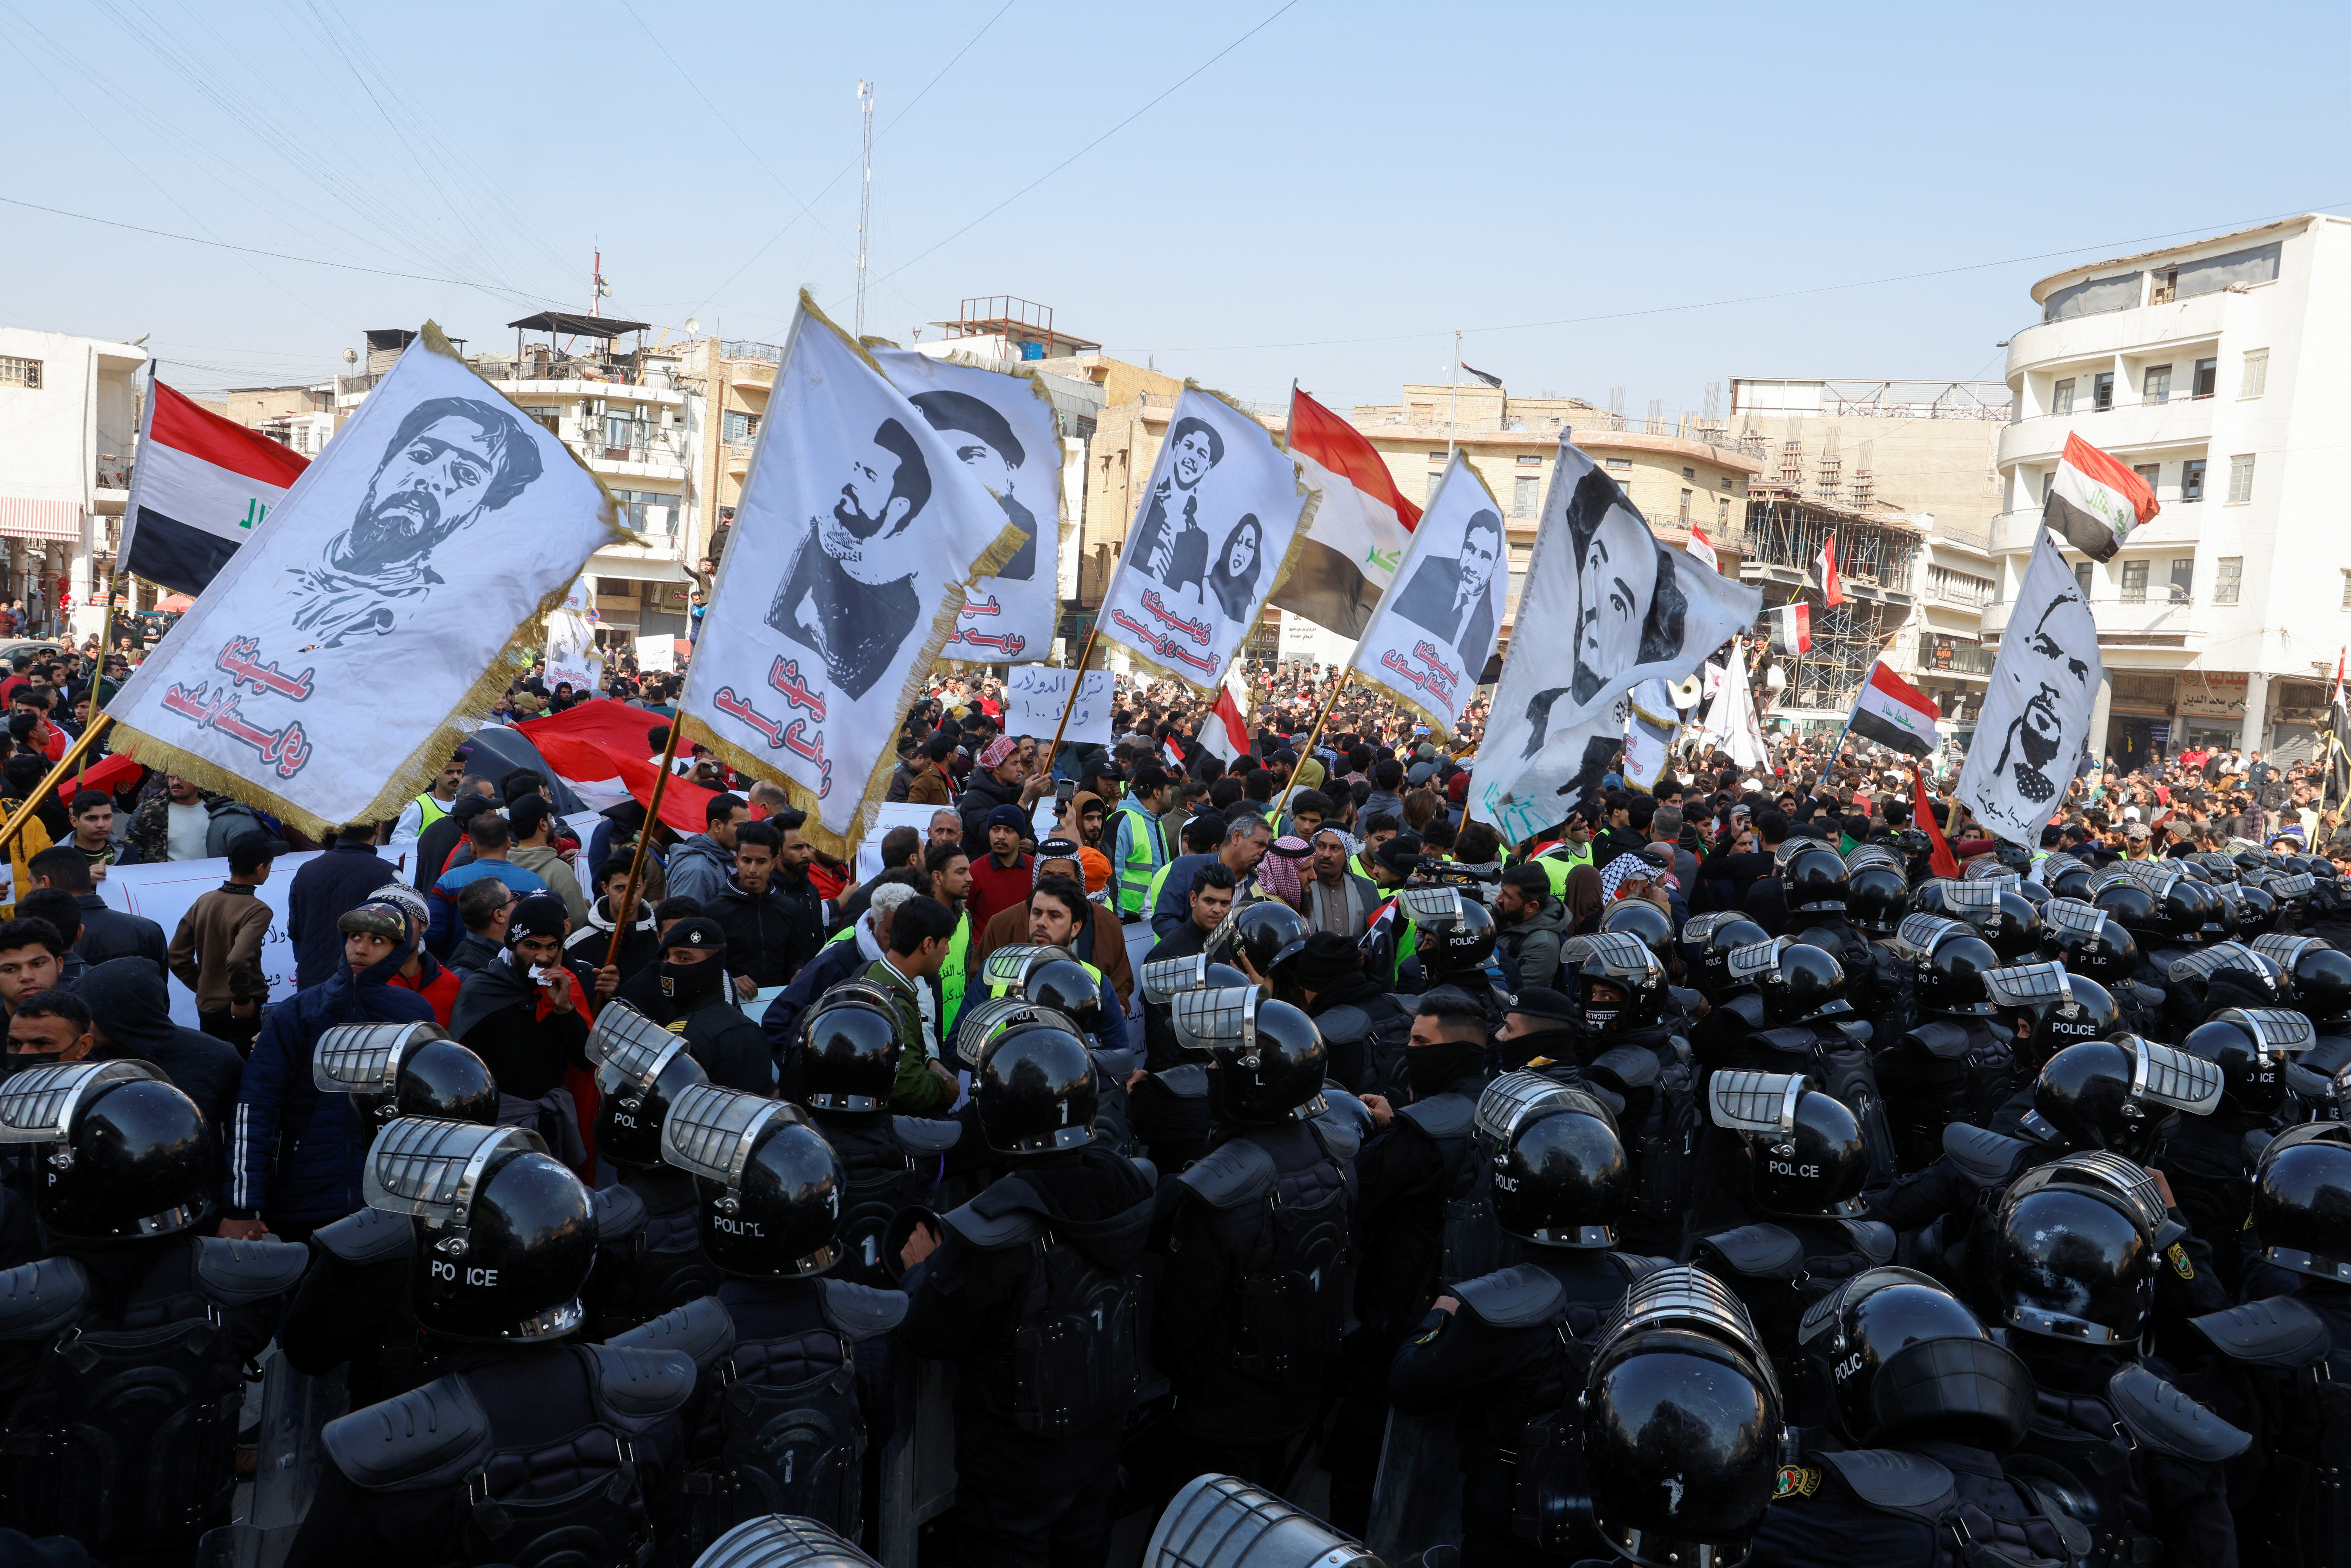 Hundreds protest in Baghdad over Iraqi dinar’s slide